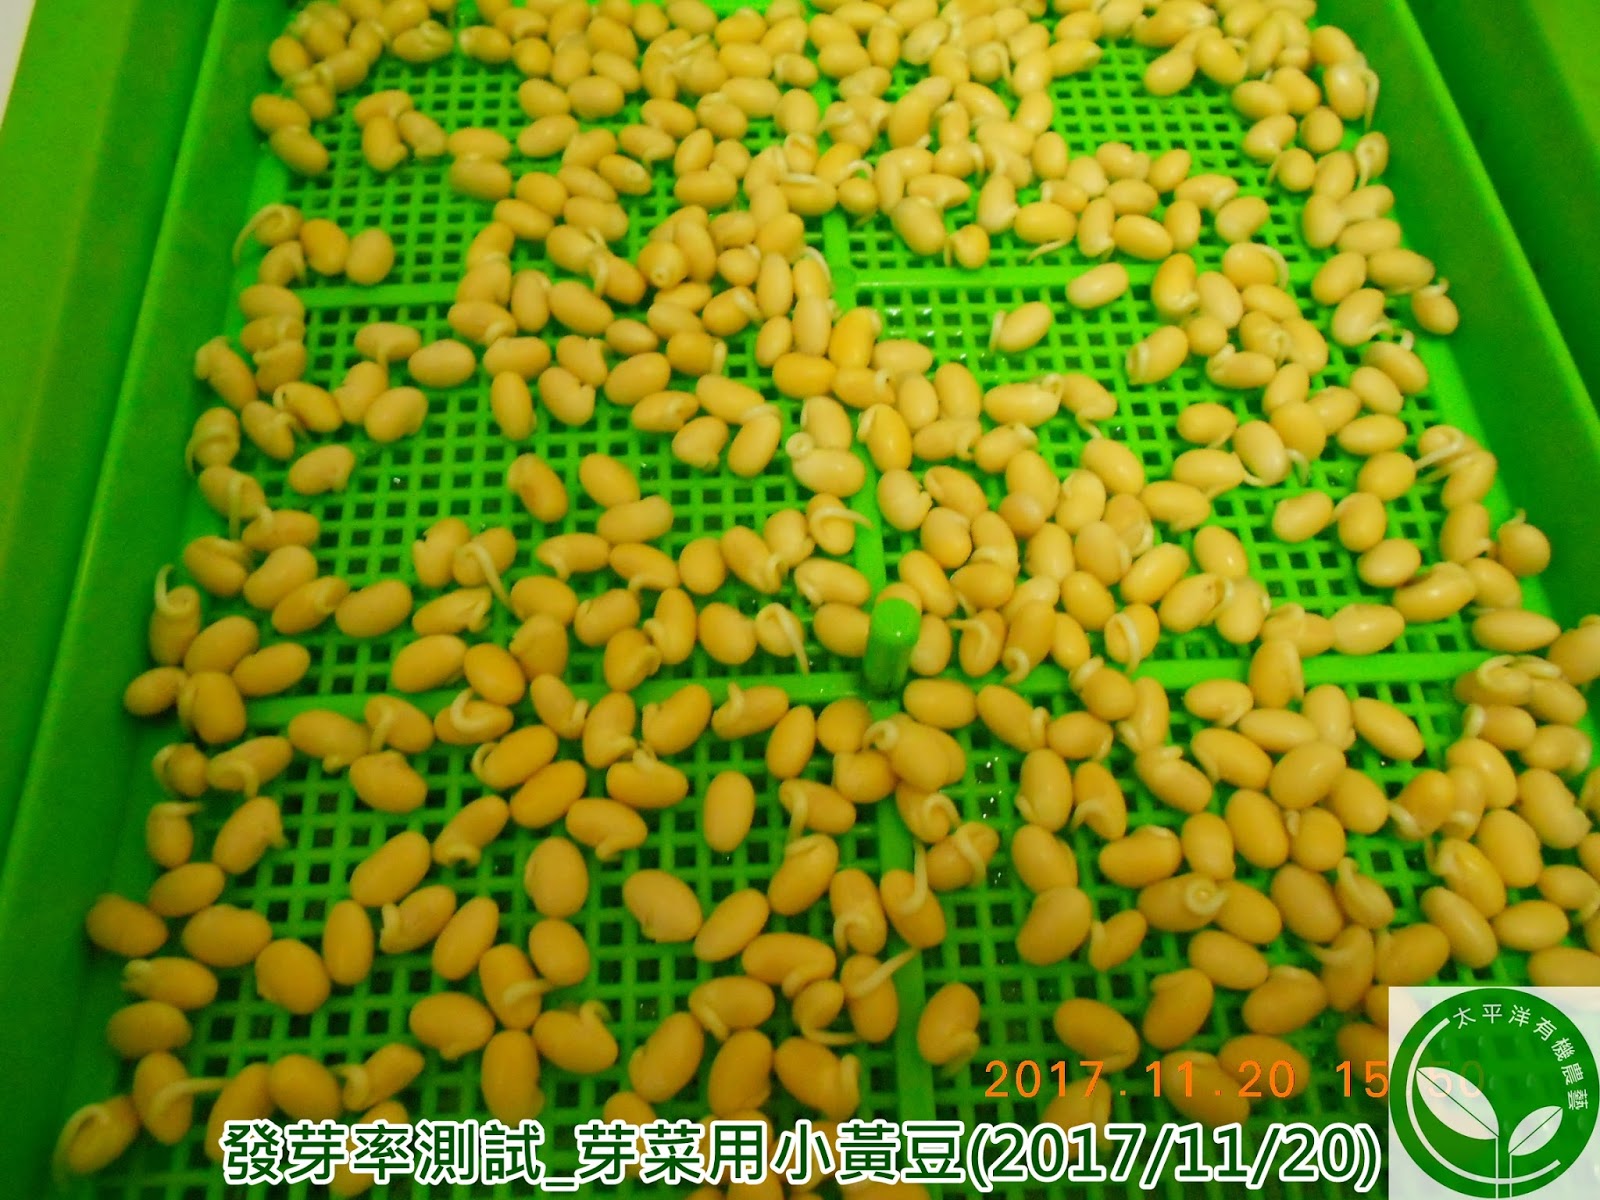 黃豆,有機黃豆,台灣黃豆,涼拌黃豆芽,如何孵黃豆芽,種黃豆芽,可催芽黃豆,有機可催芽黃豆,黃豆催芽,黃豆食譜